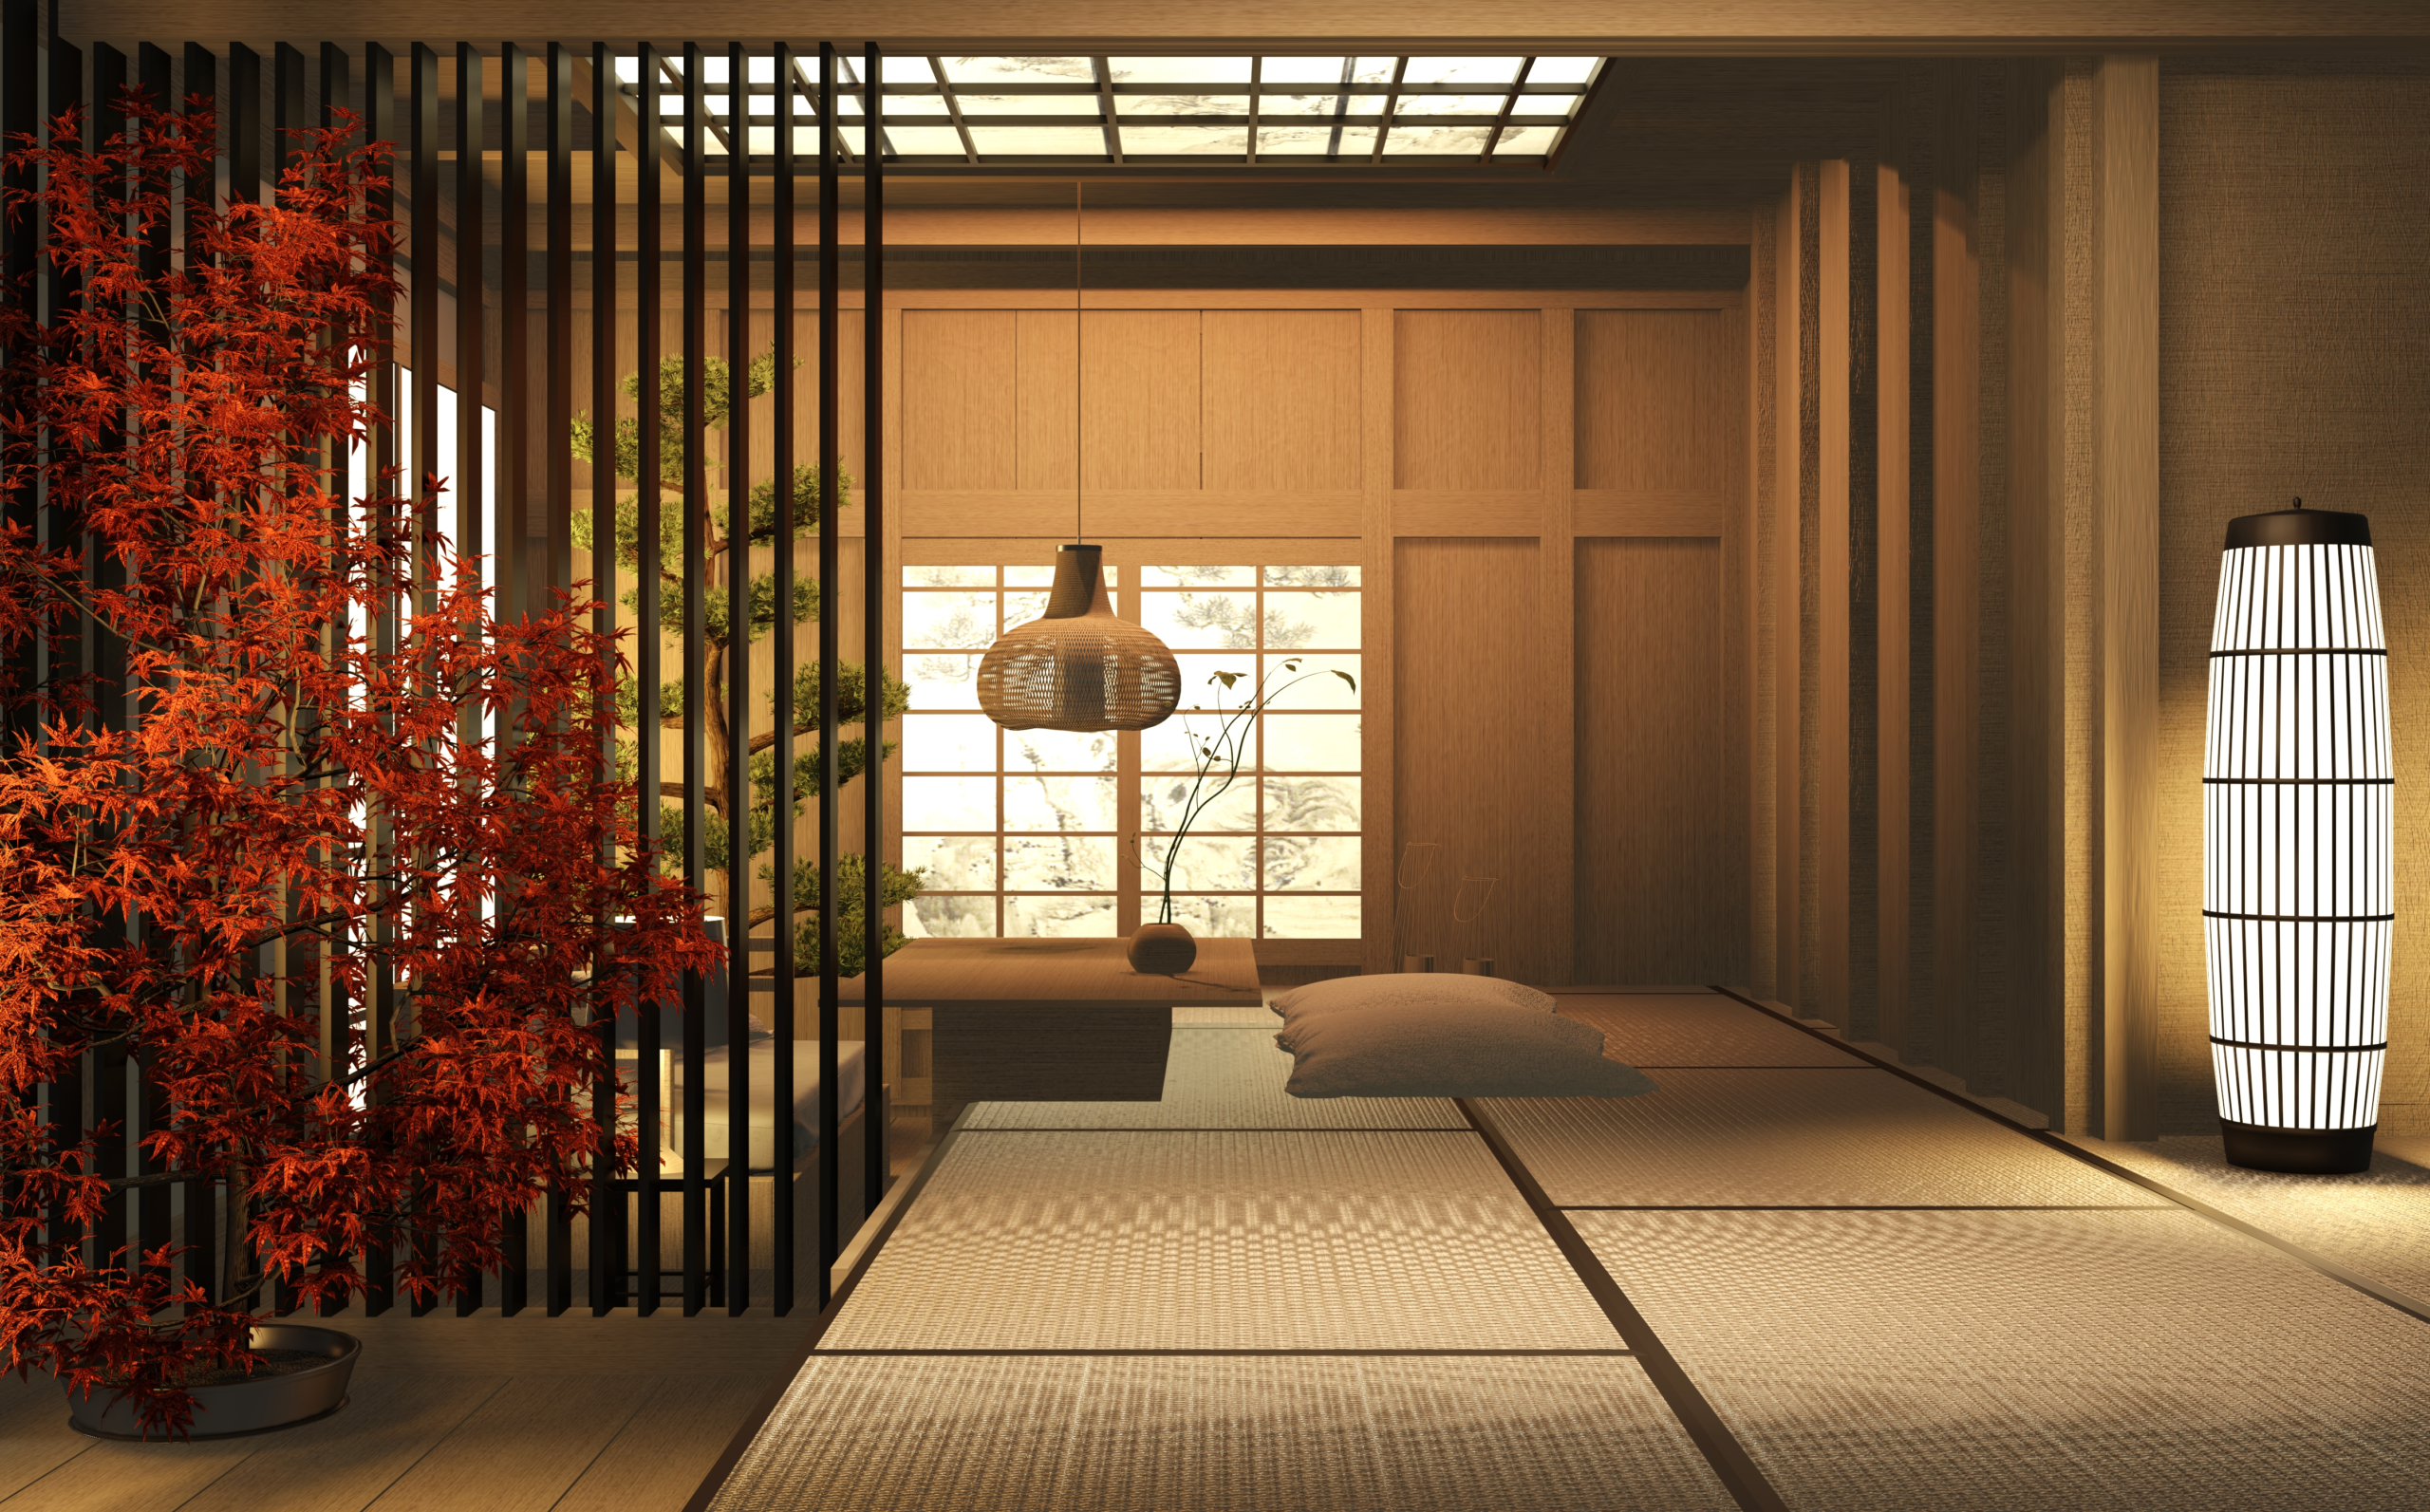 Trải chiếu tatami lên toàn bộ sàn nhà, tạo cảm giác thoải mái khi có thể ngồi hoặc nằm ở bất cứ đâu. (Ảnh: Shutterstock)